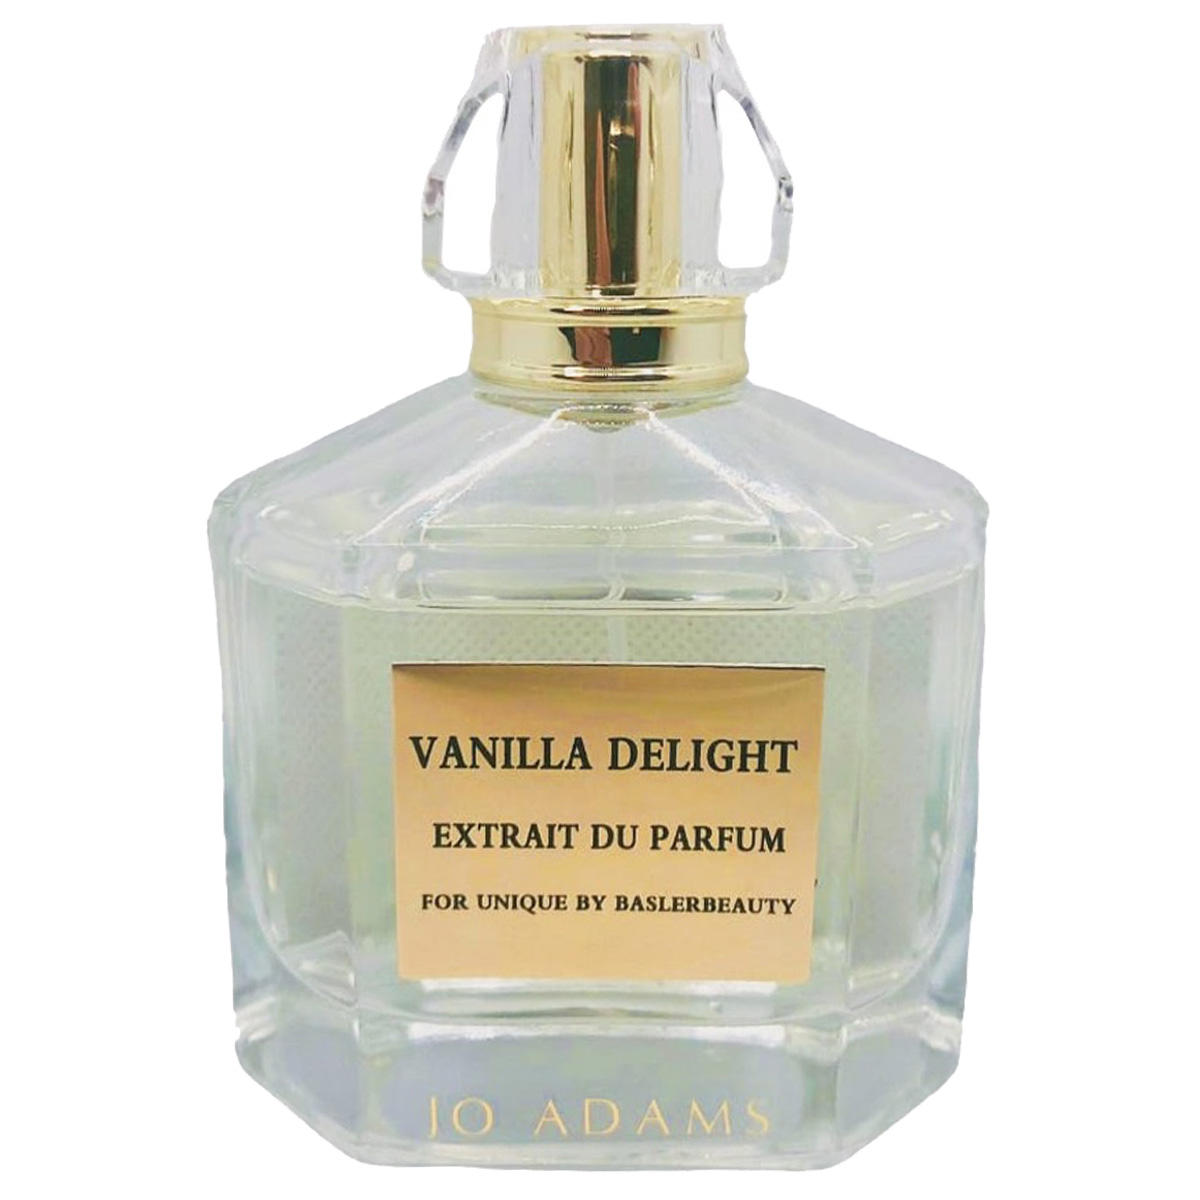 Jo Adams Vanilla Delight Extrait du Parfum  - 1